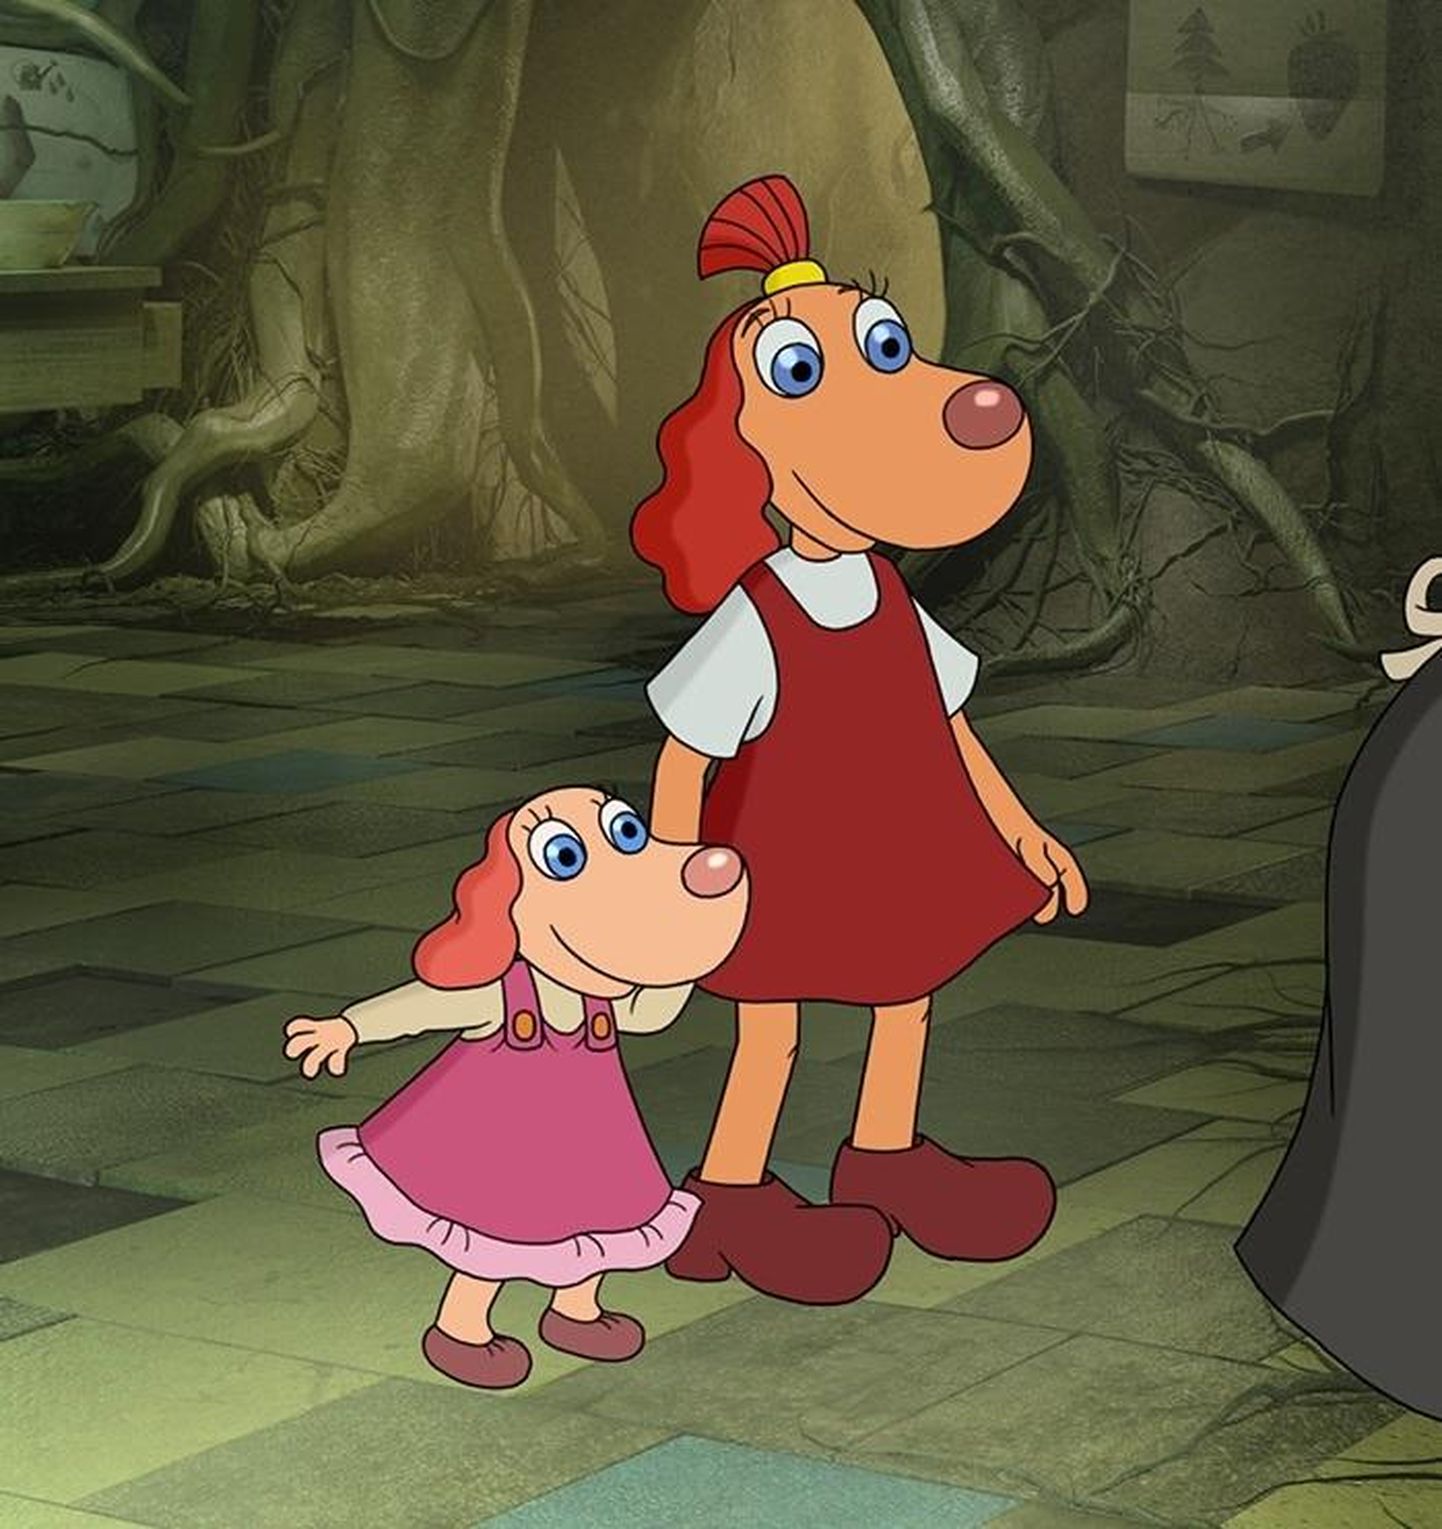 Animafilmi kolmandas osas “Lotte ja kadunud lohed” sai koeratüdruk Lotte endale väikse õe Roosi.